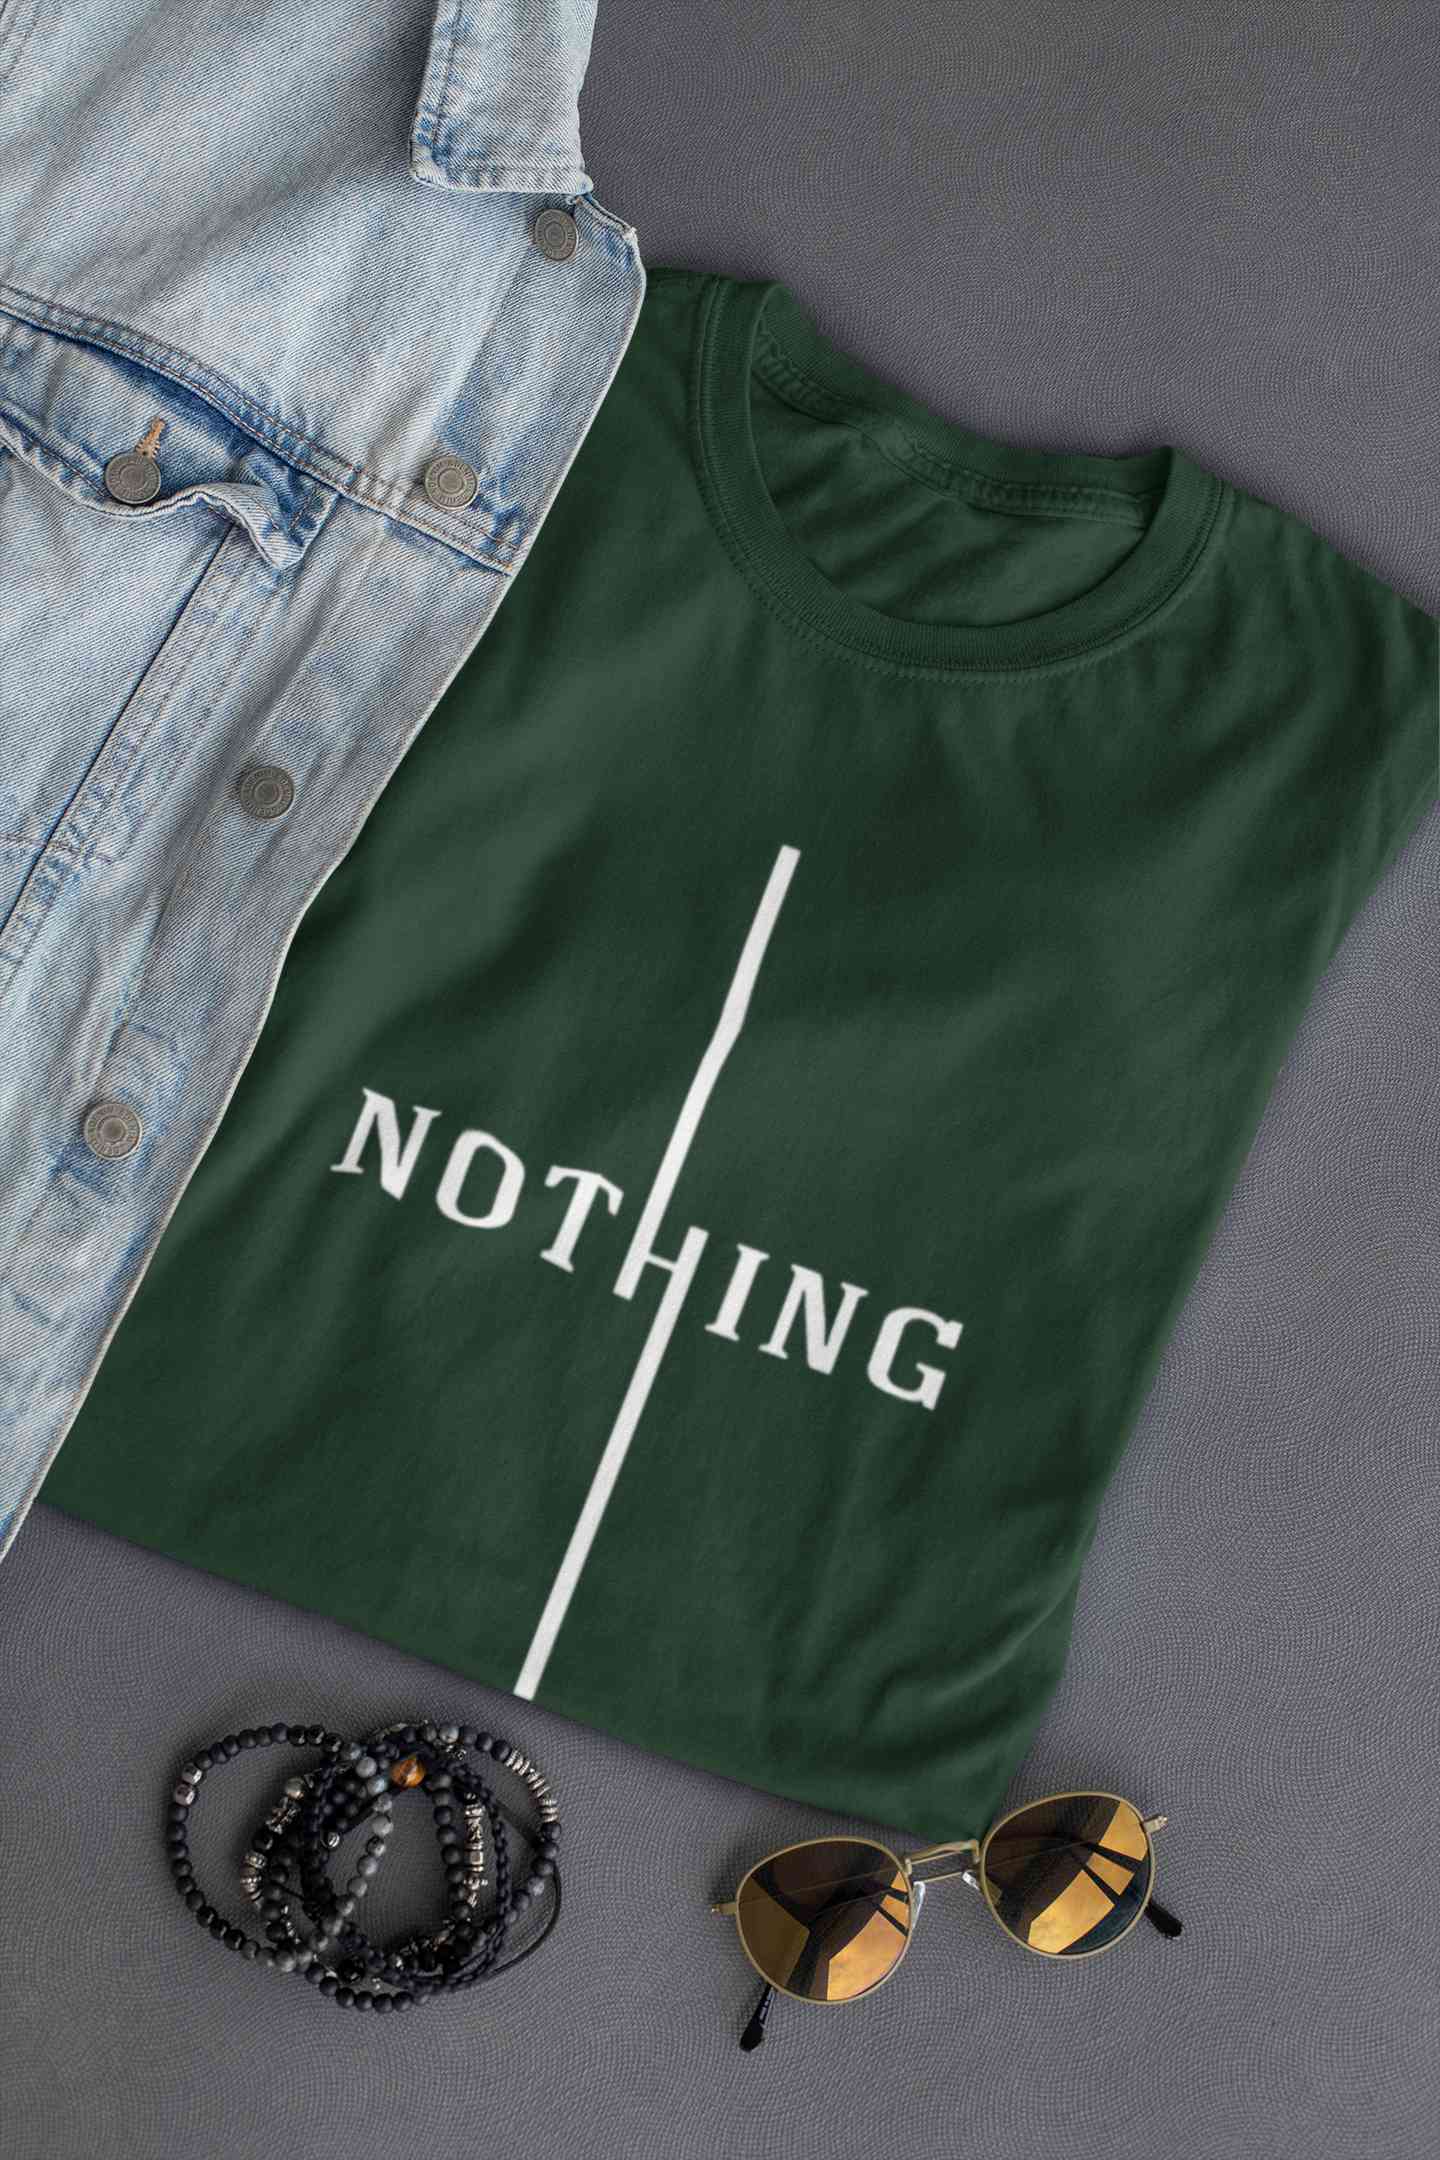 Nothing Women Half Sleeves T-shirt- FunkyTeesClub